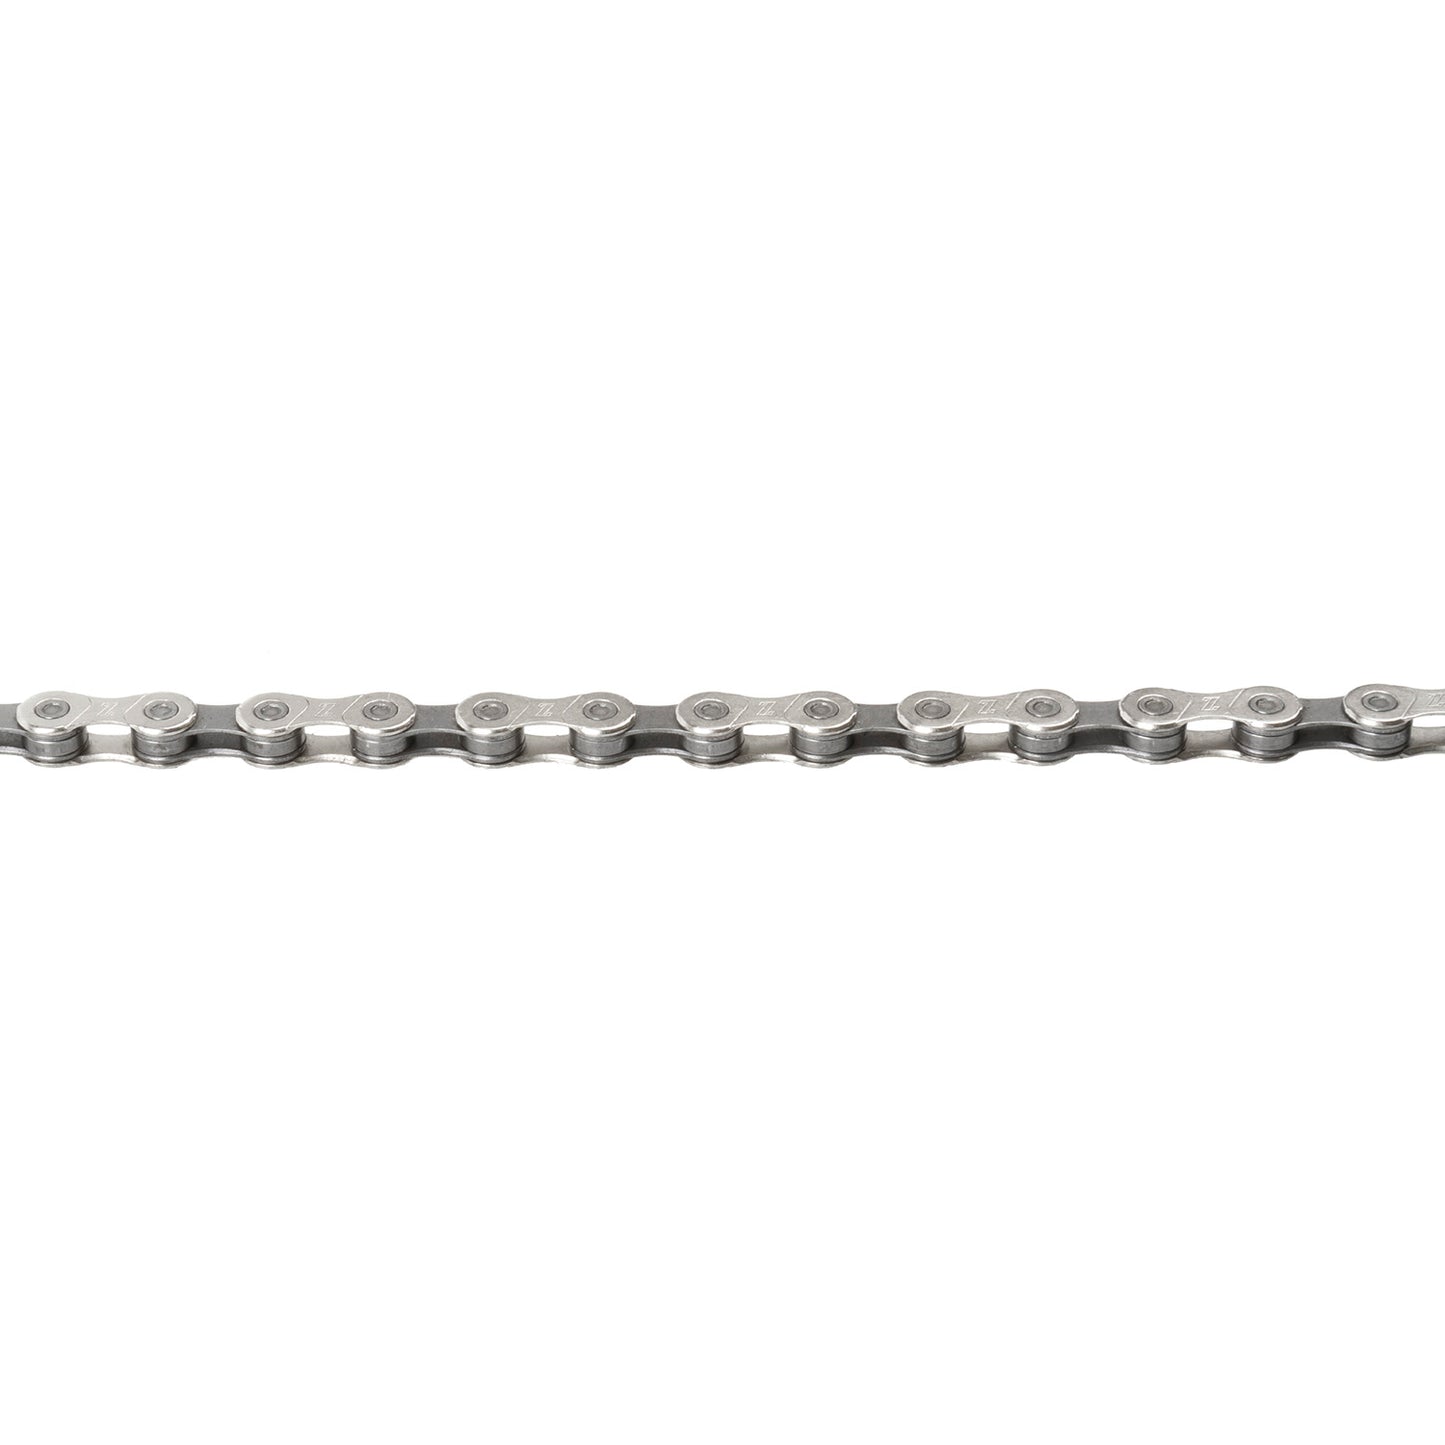 Catena M-Wave 6 7 8 Velocità 1 2x3 32, grigio argento. 15 m su rollio, incl 10 interruttori di collegamento